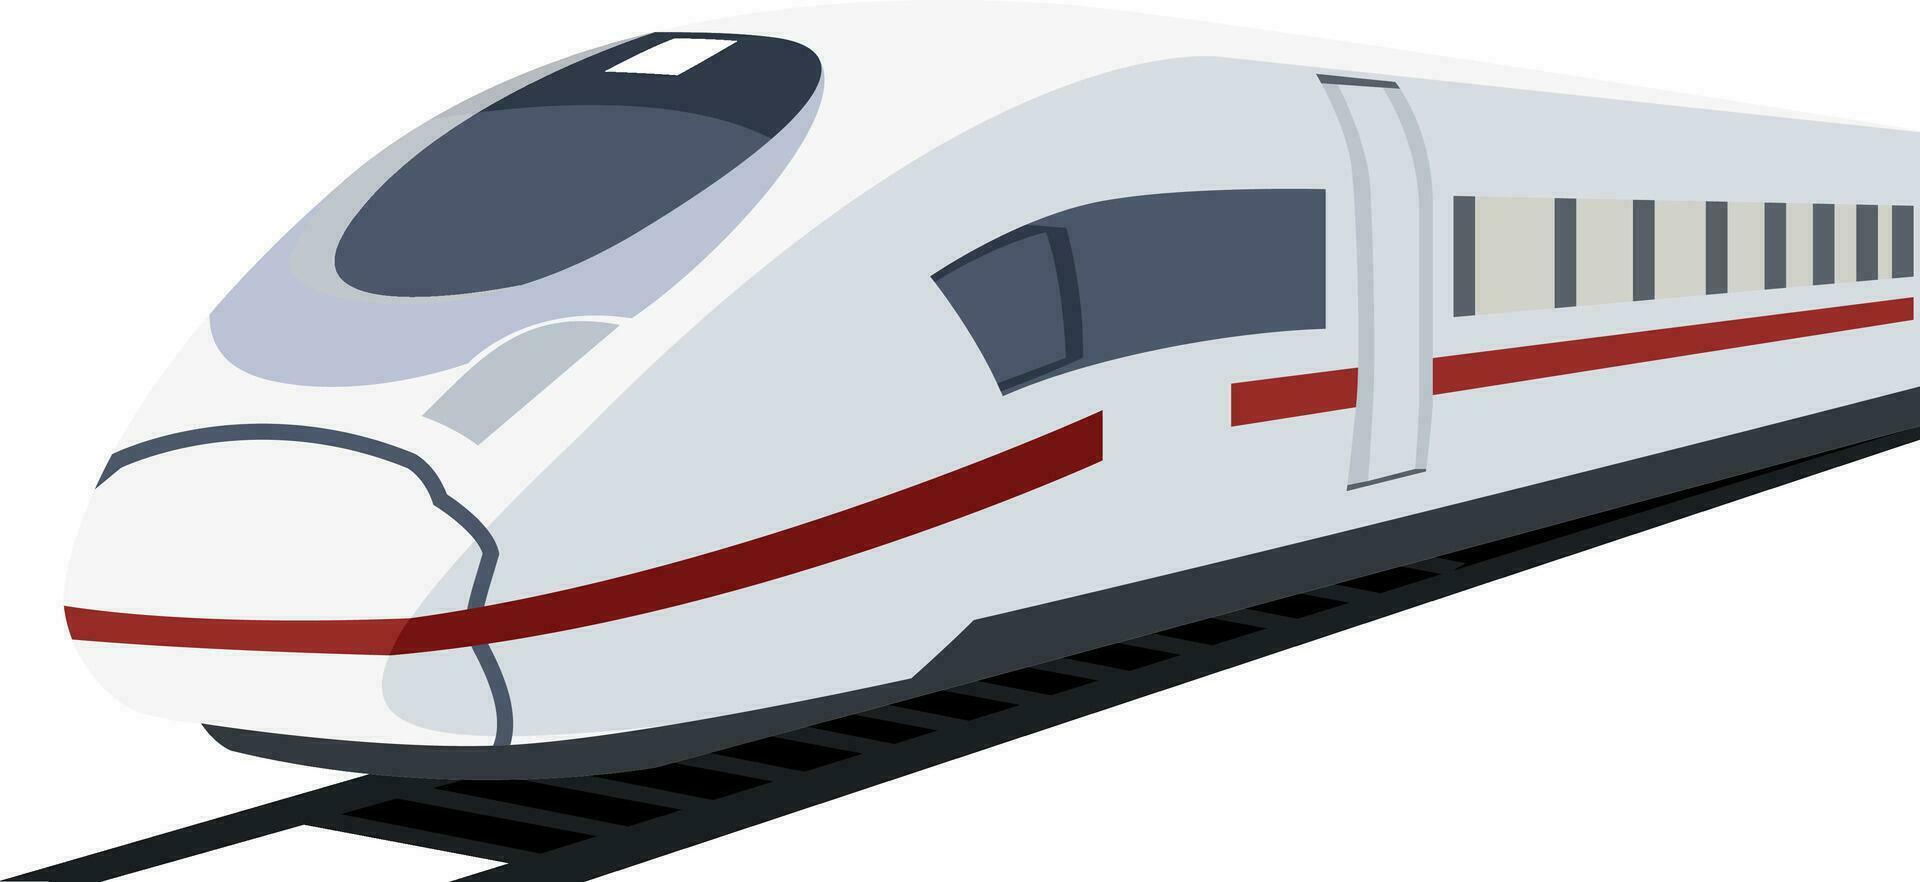 vector illustratie van wit metro trein.